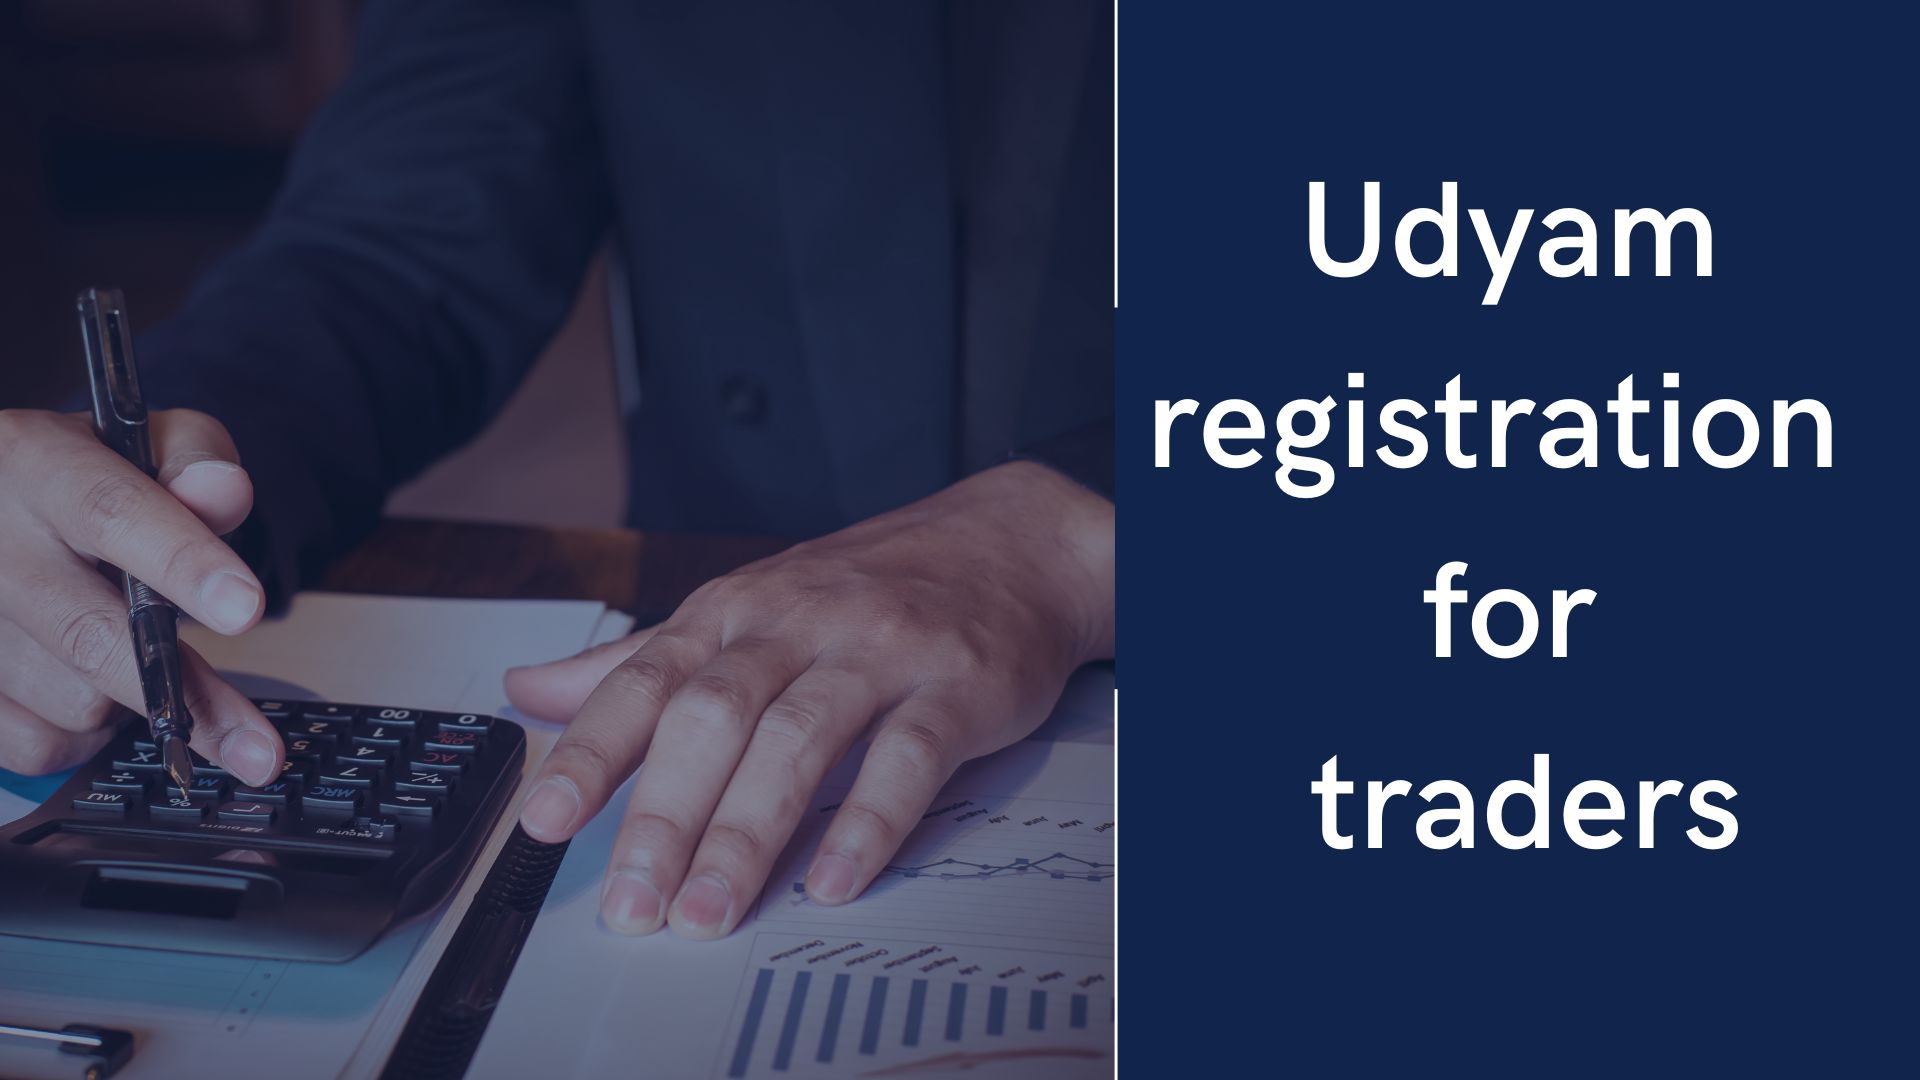 Udyam registration for traders